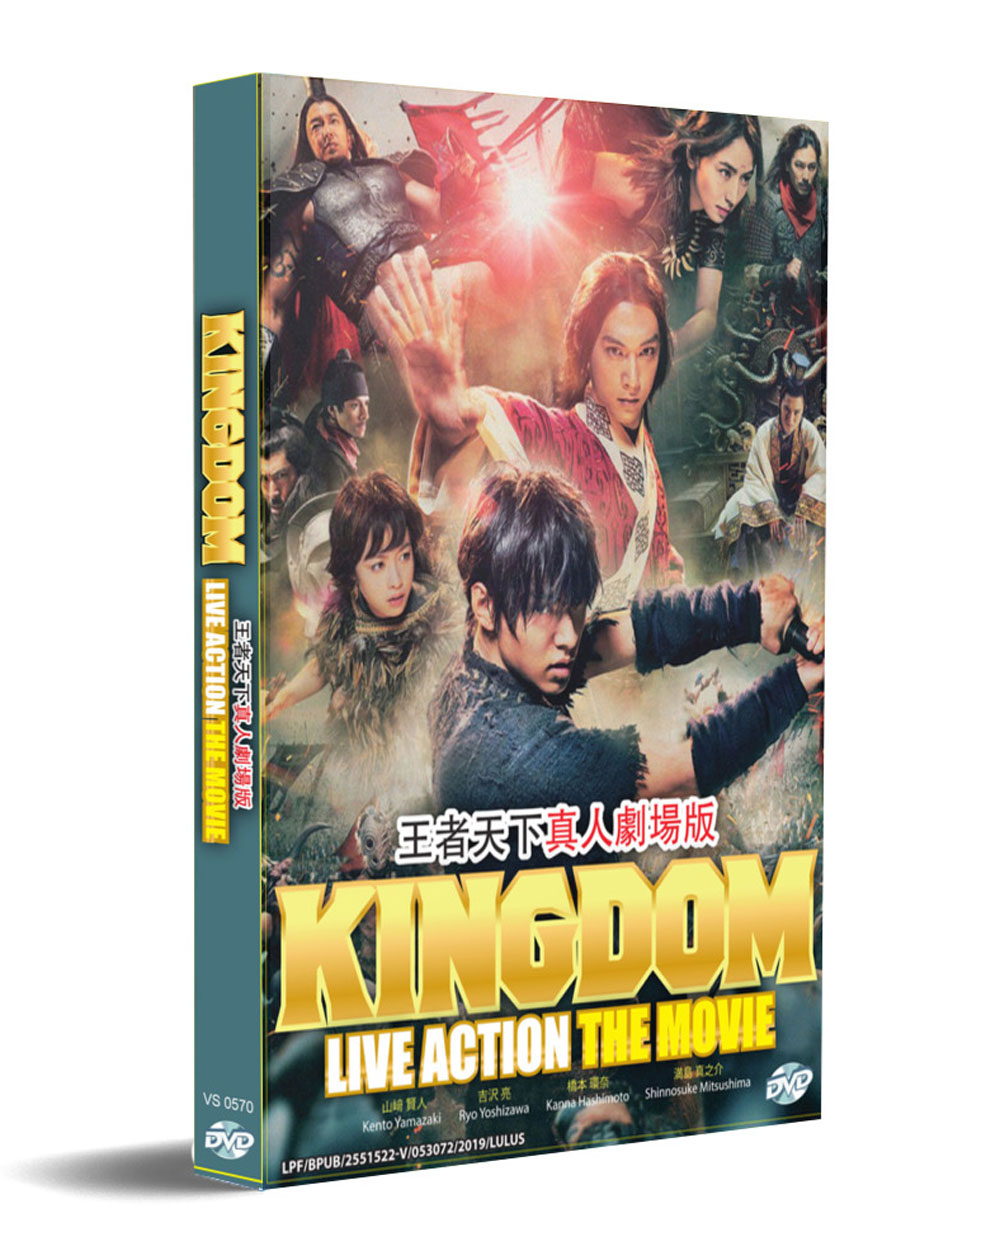 キングダム (DVD) (2019) 日本映画